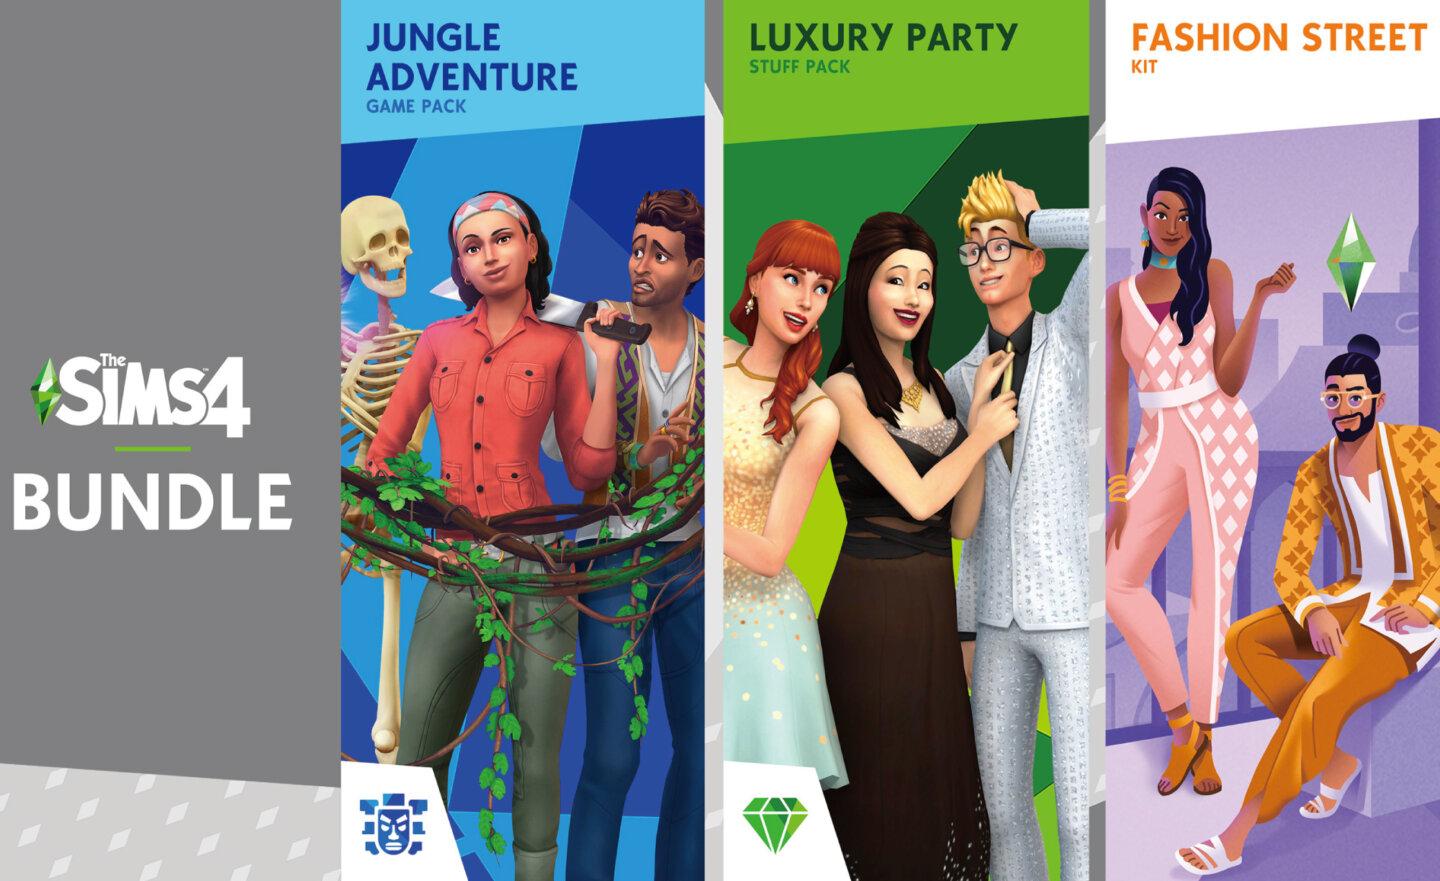 【限時免費】《The Sims 4 冒險生活》同捆包放送中，2023 年 5 月 18 日晚上 11:00 截止